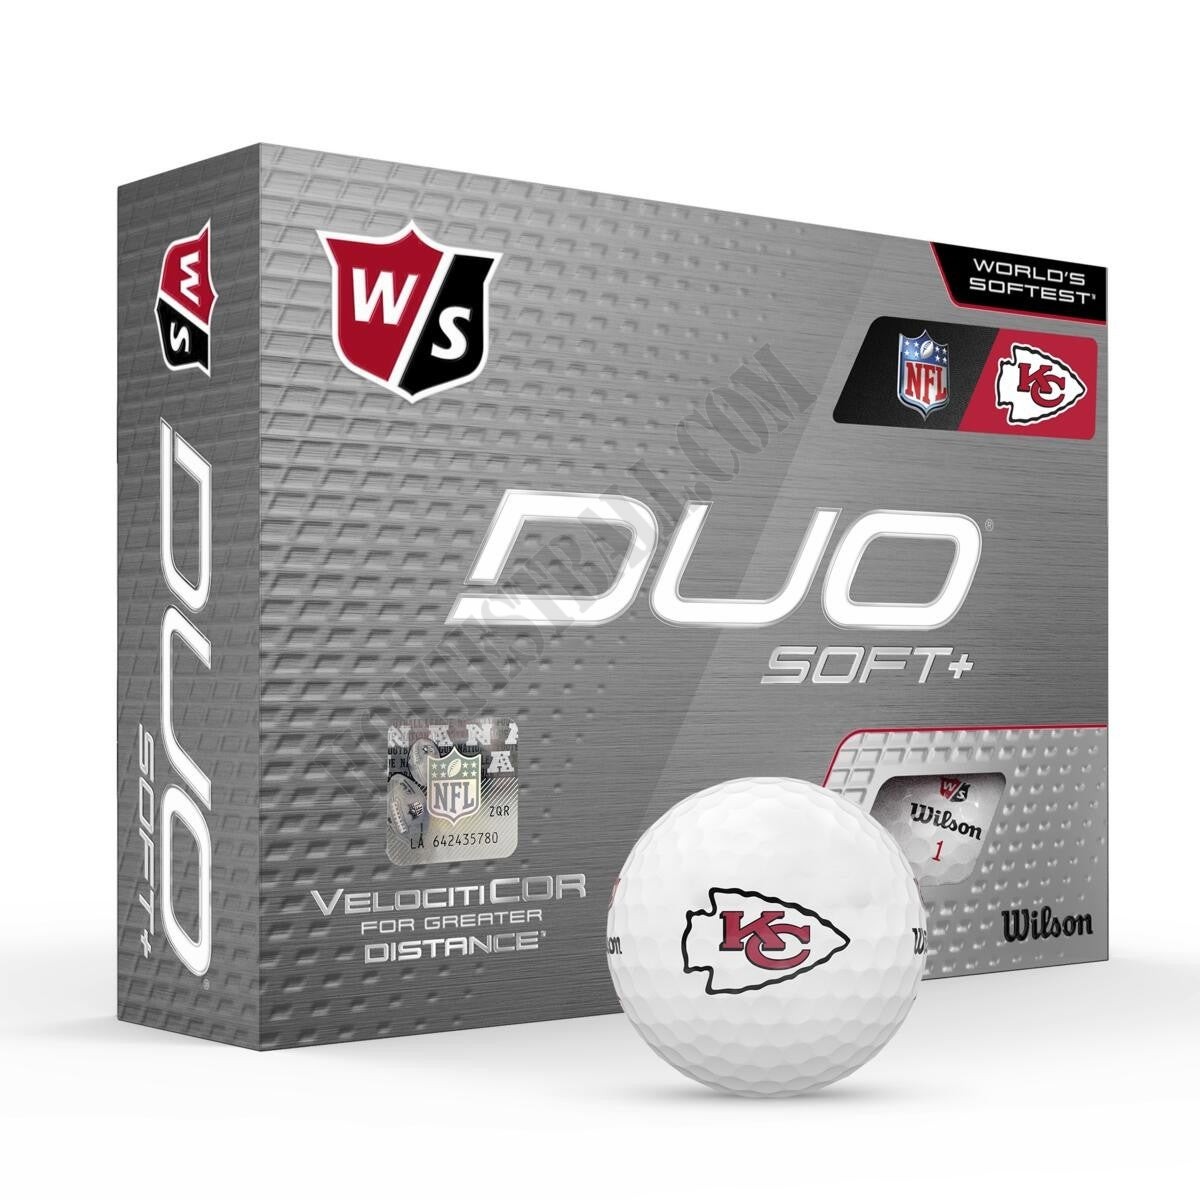 Duo Soft+ NFL Golf Balls - Kansas City Chiefs ● Wilson Promotions - Duo Soft+ NFL Golf Balls - Kansas City Chiefs ● Wilson Promotions